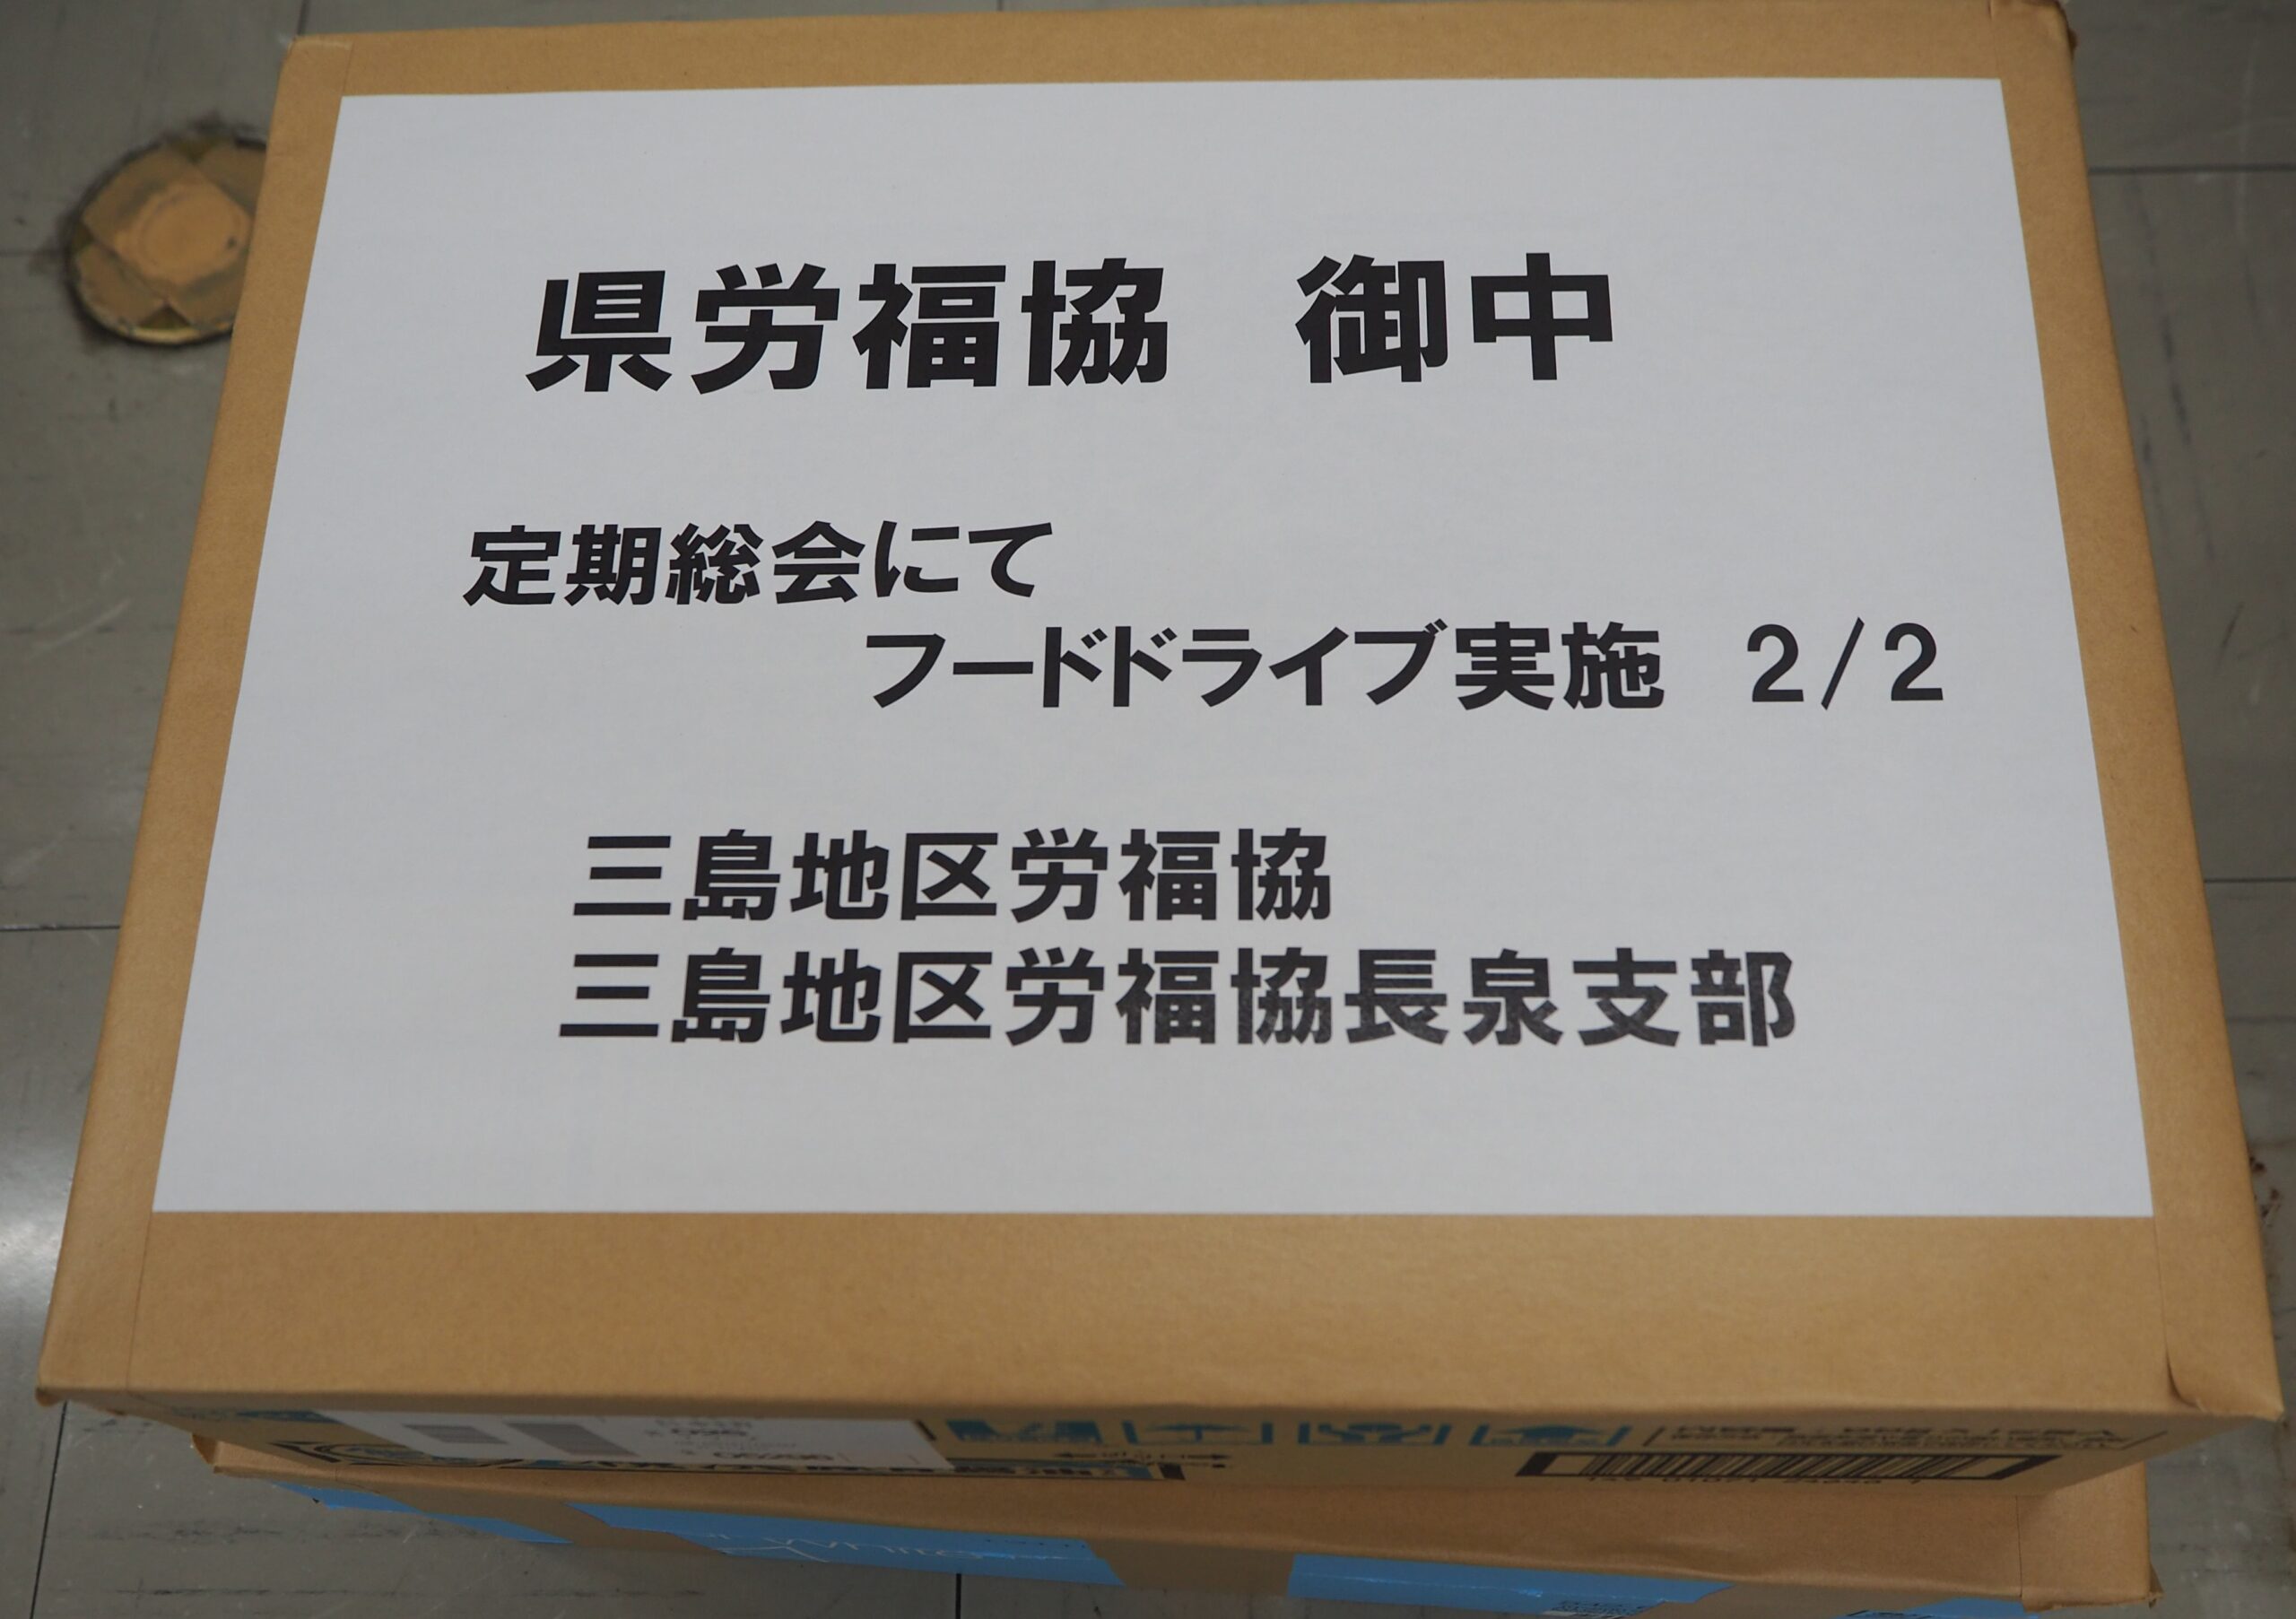 小糸製作所労組と三島地区労福協長泉支部から食品をいただきました。